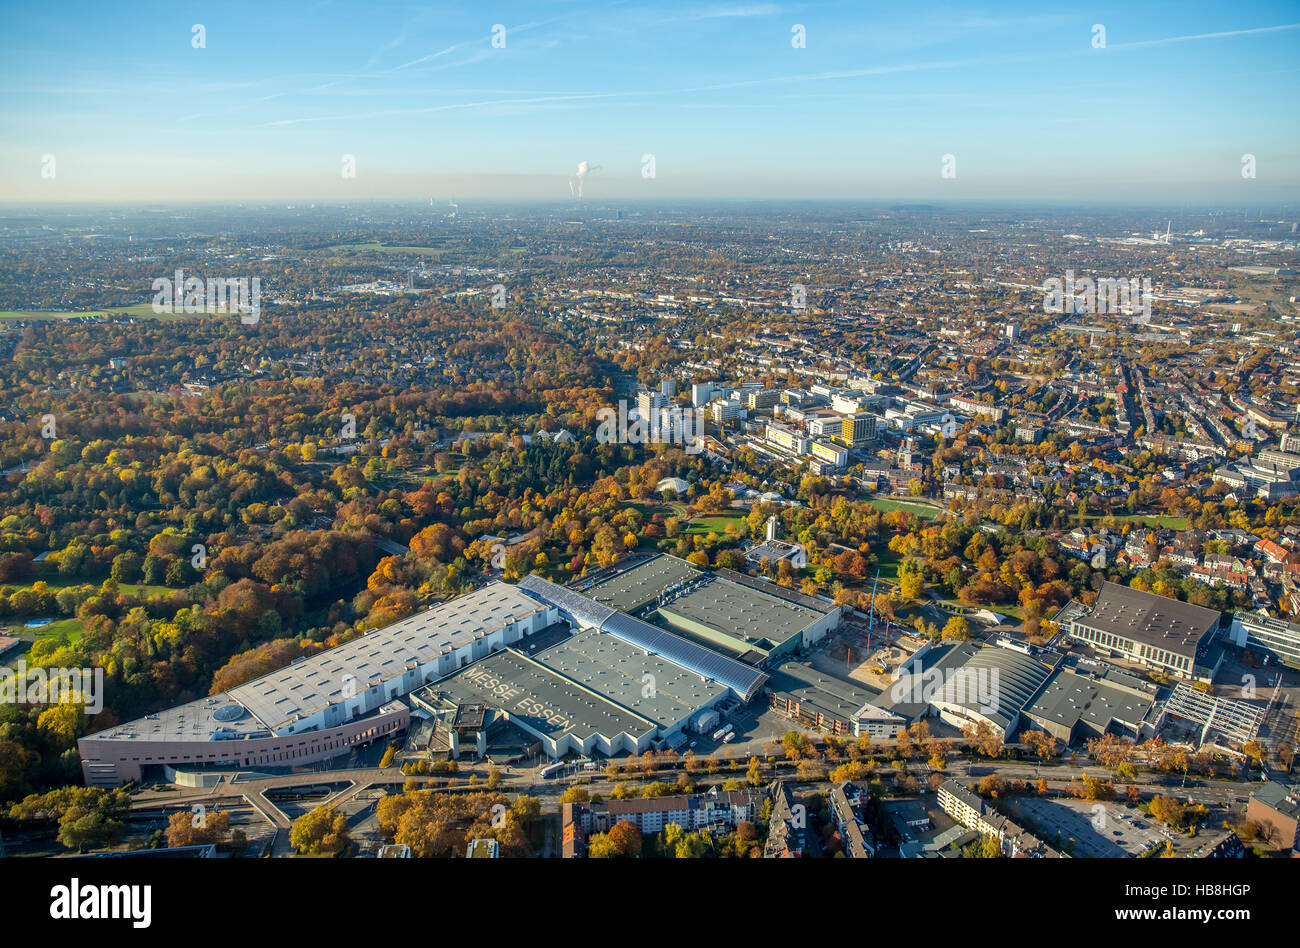 Vista aérea, justo en expansión Grugapark Essen, Essen, área de Ruhr, Renania del Norte-Westfalia, Alemania, Europa, vista aérea, aves-ey Foto de stock